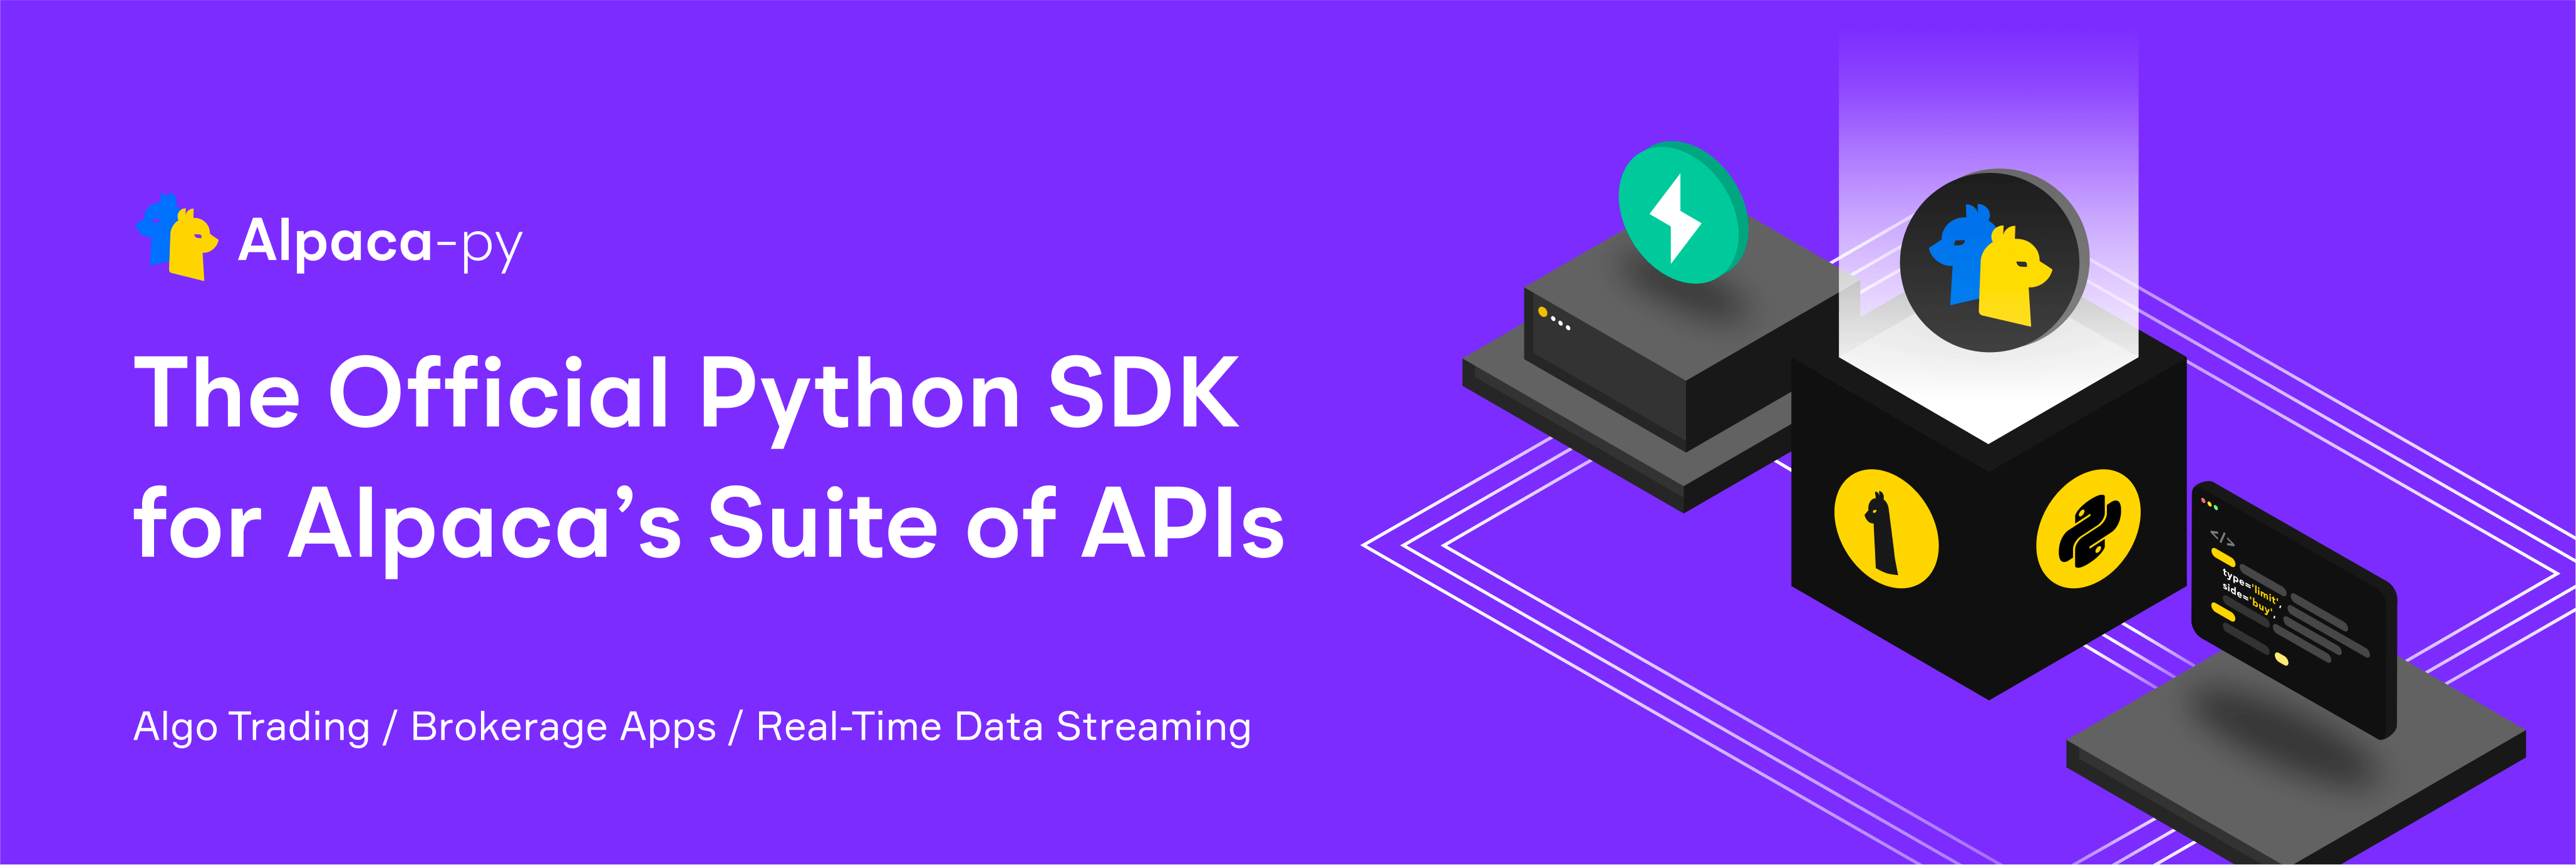 The official Python SDK for Alpaca's APIs.